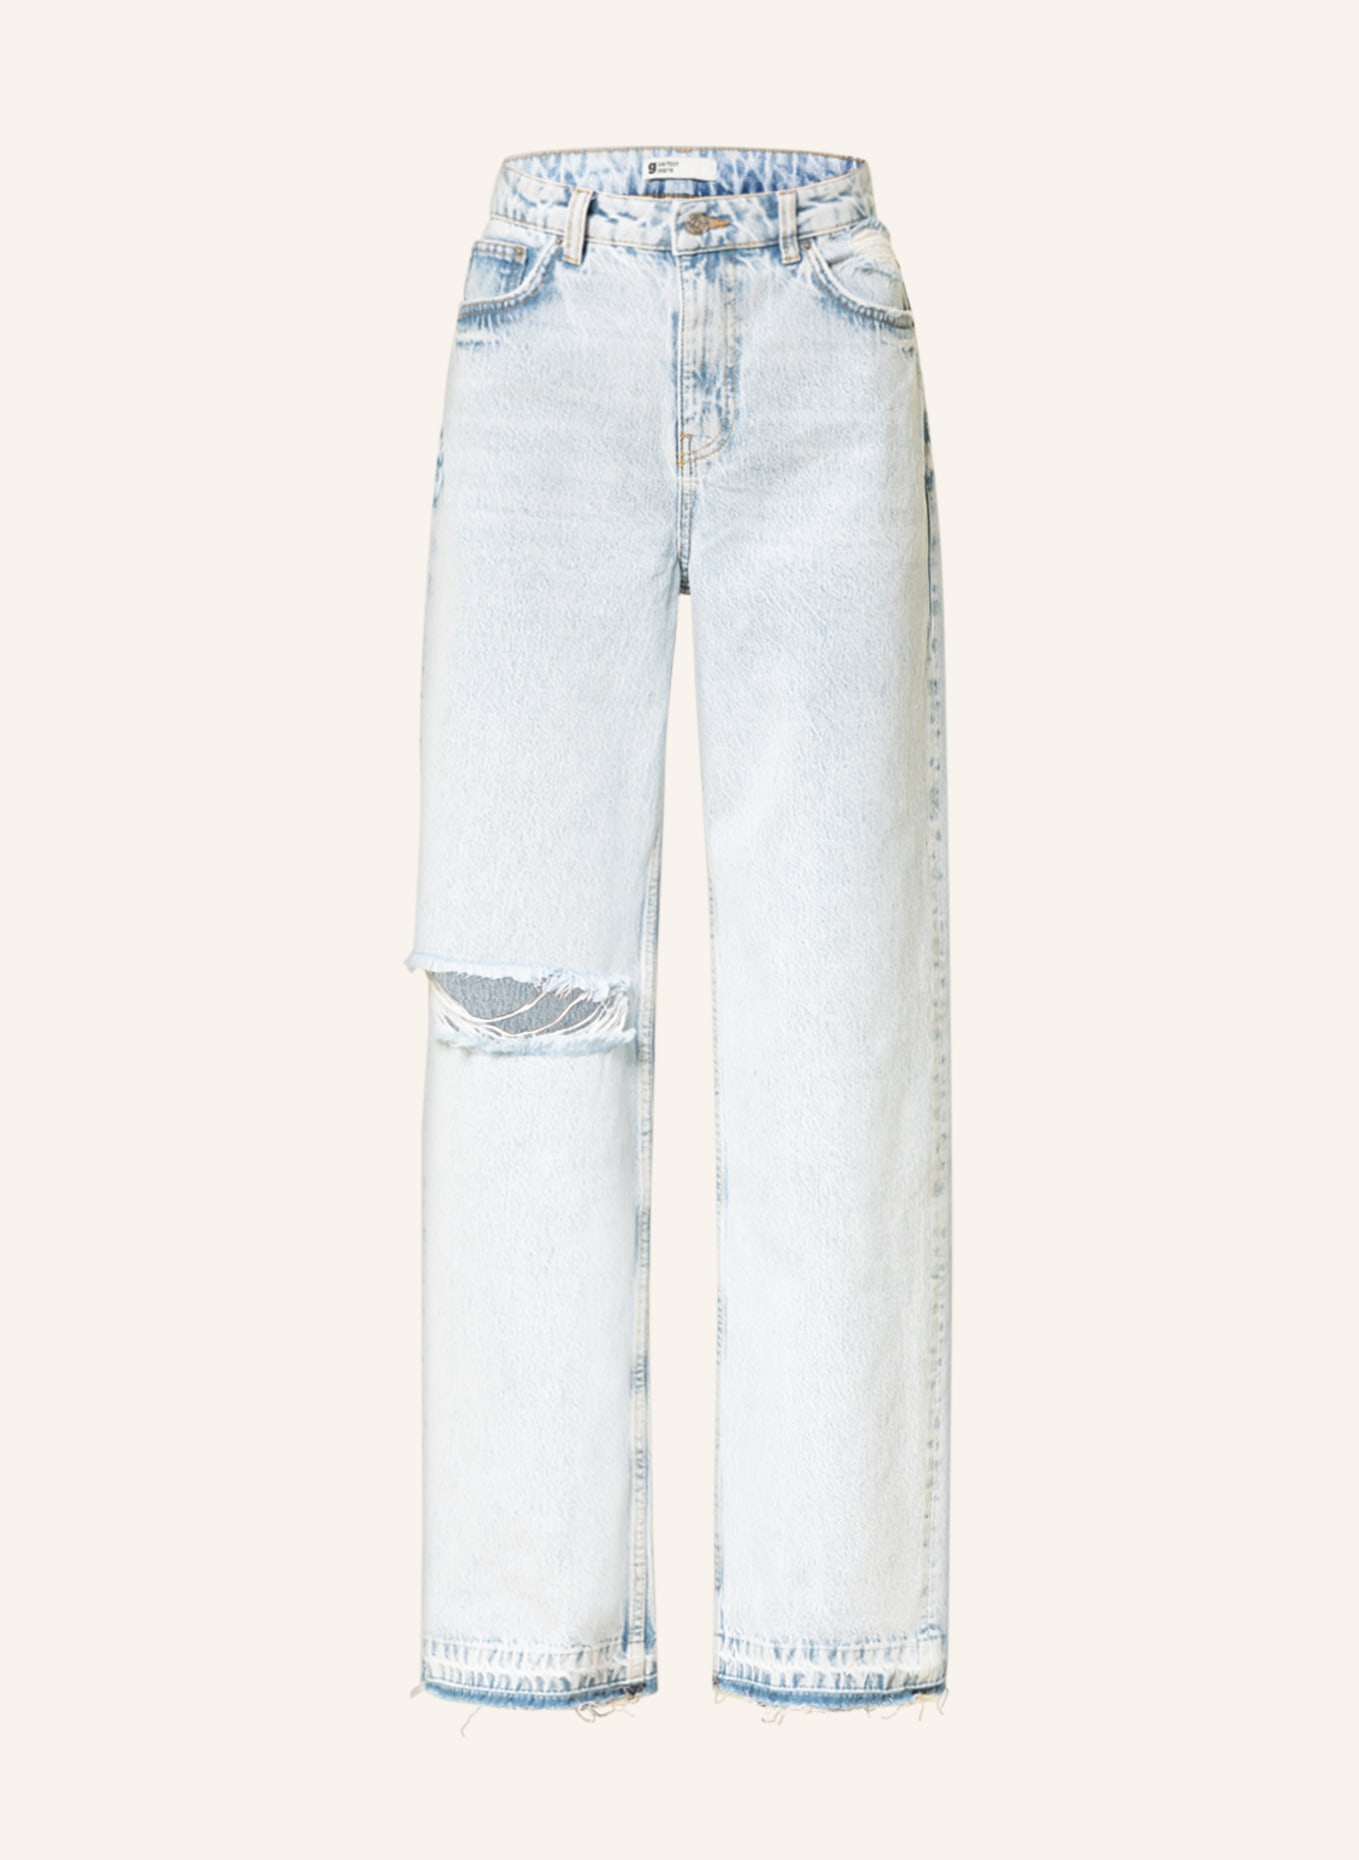 gina tricot Destroyed jeans, Color: 5643 Lt blue destroy (Image 1)